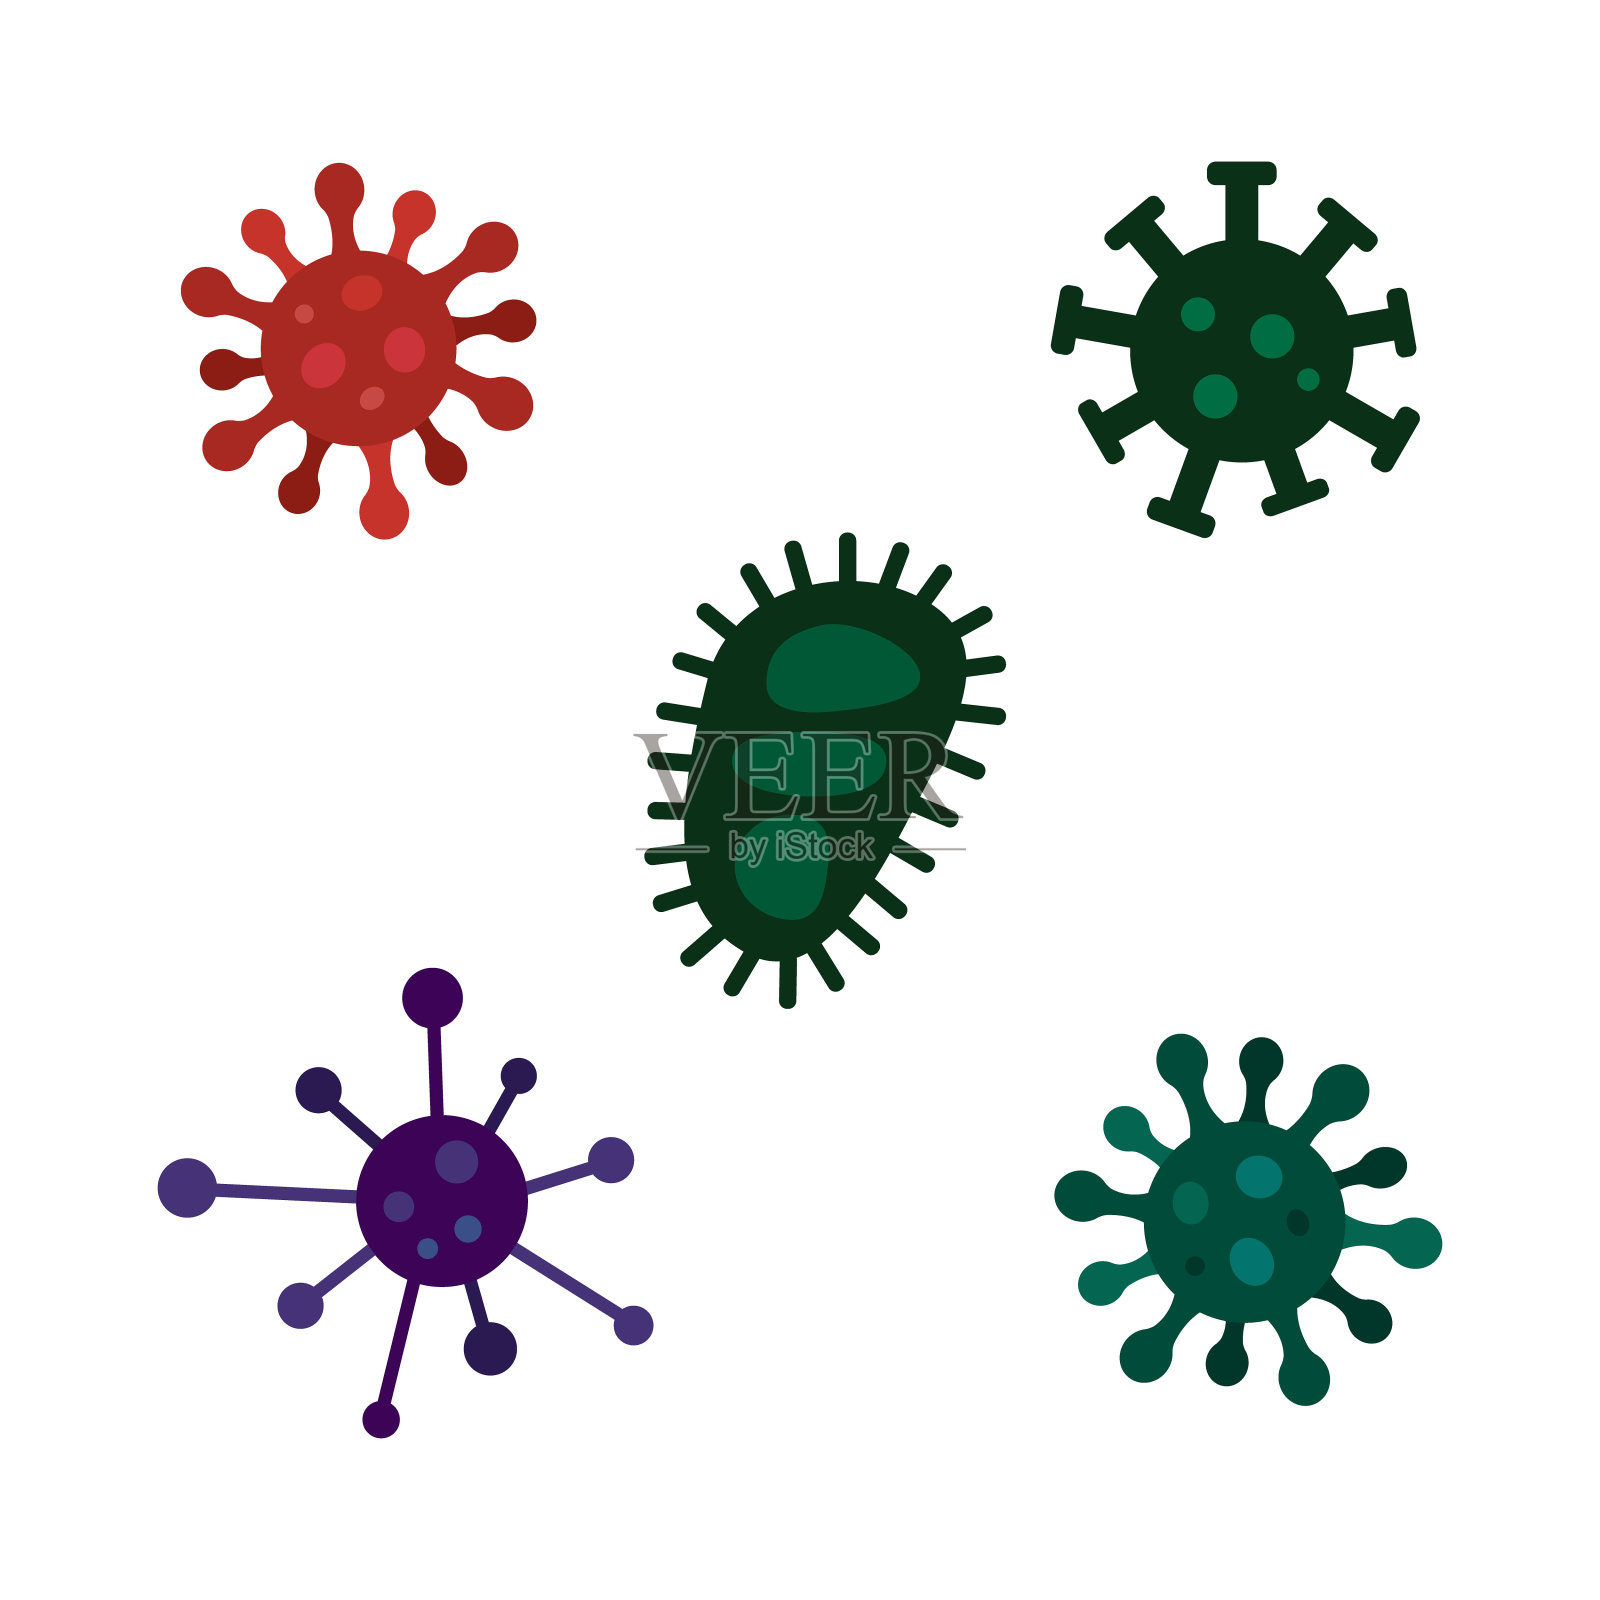 病毒、病原体、微生物、冠状病毒载体图标集插画图片素材